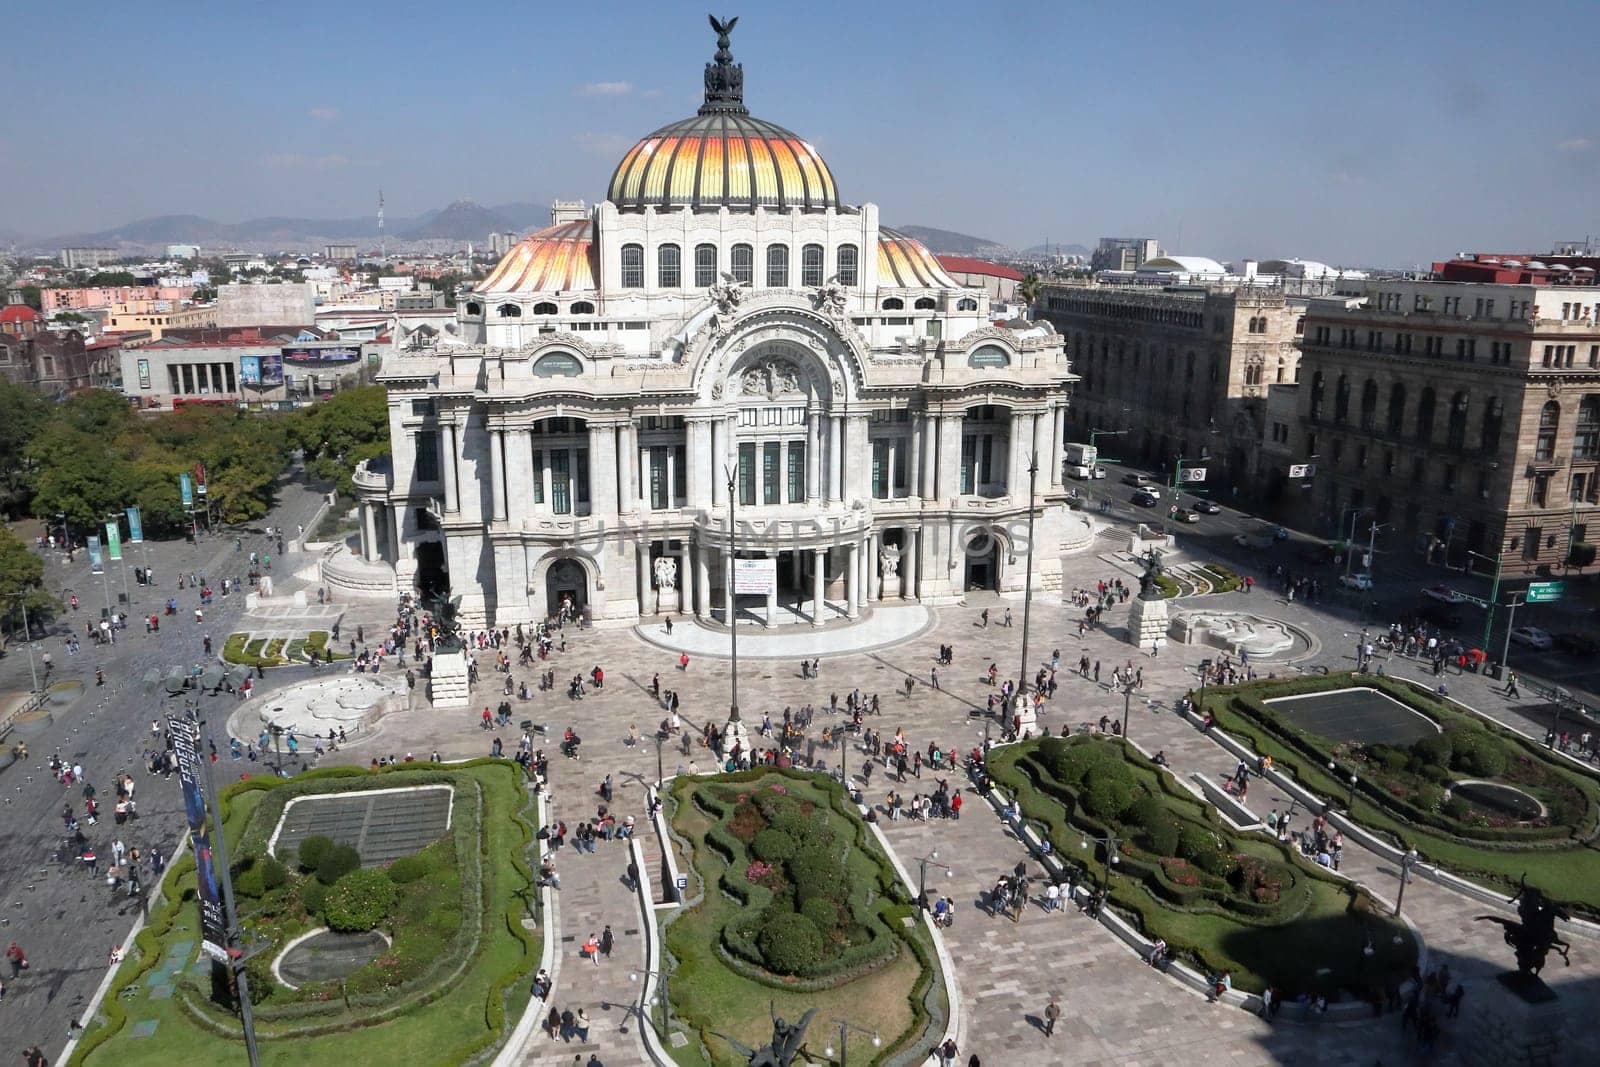 Palacio de Bellas Artes, Mexico City by Marcielito